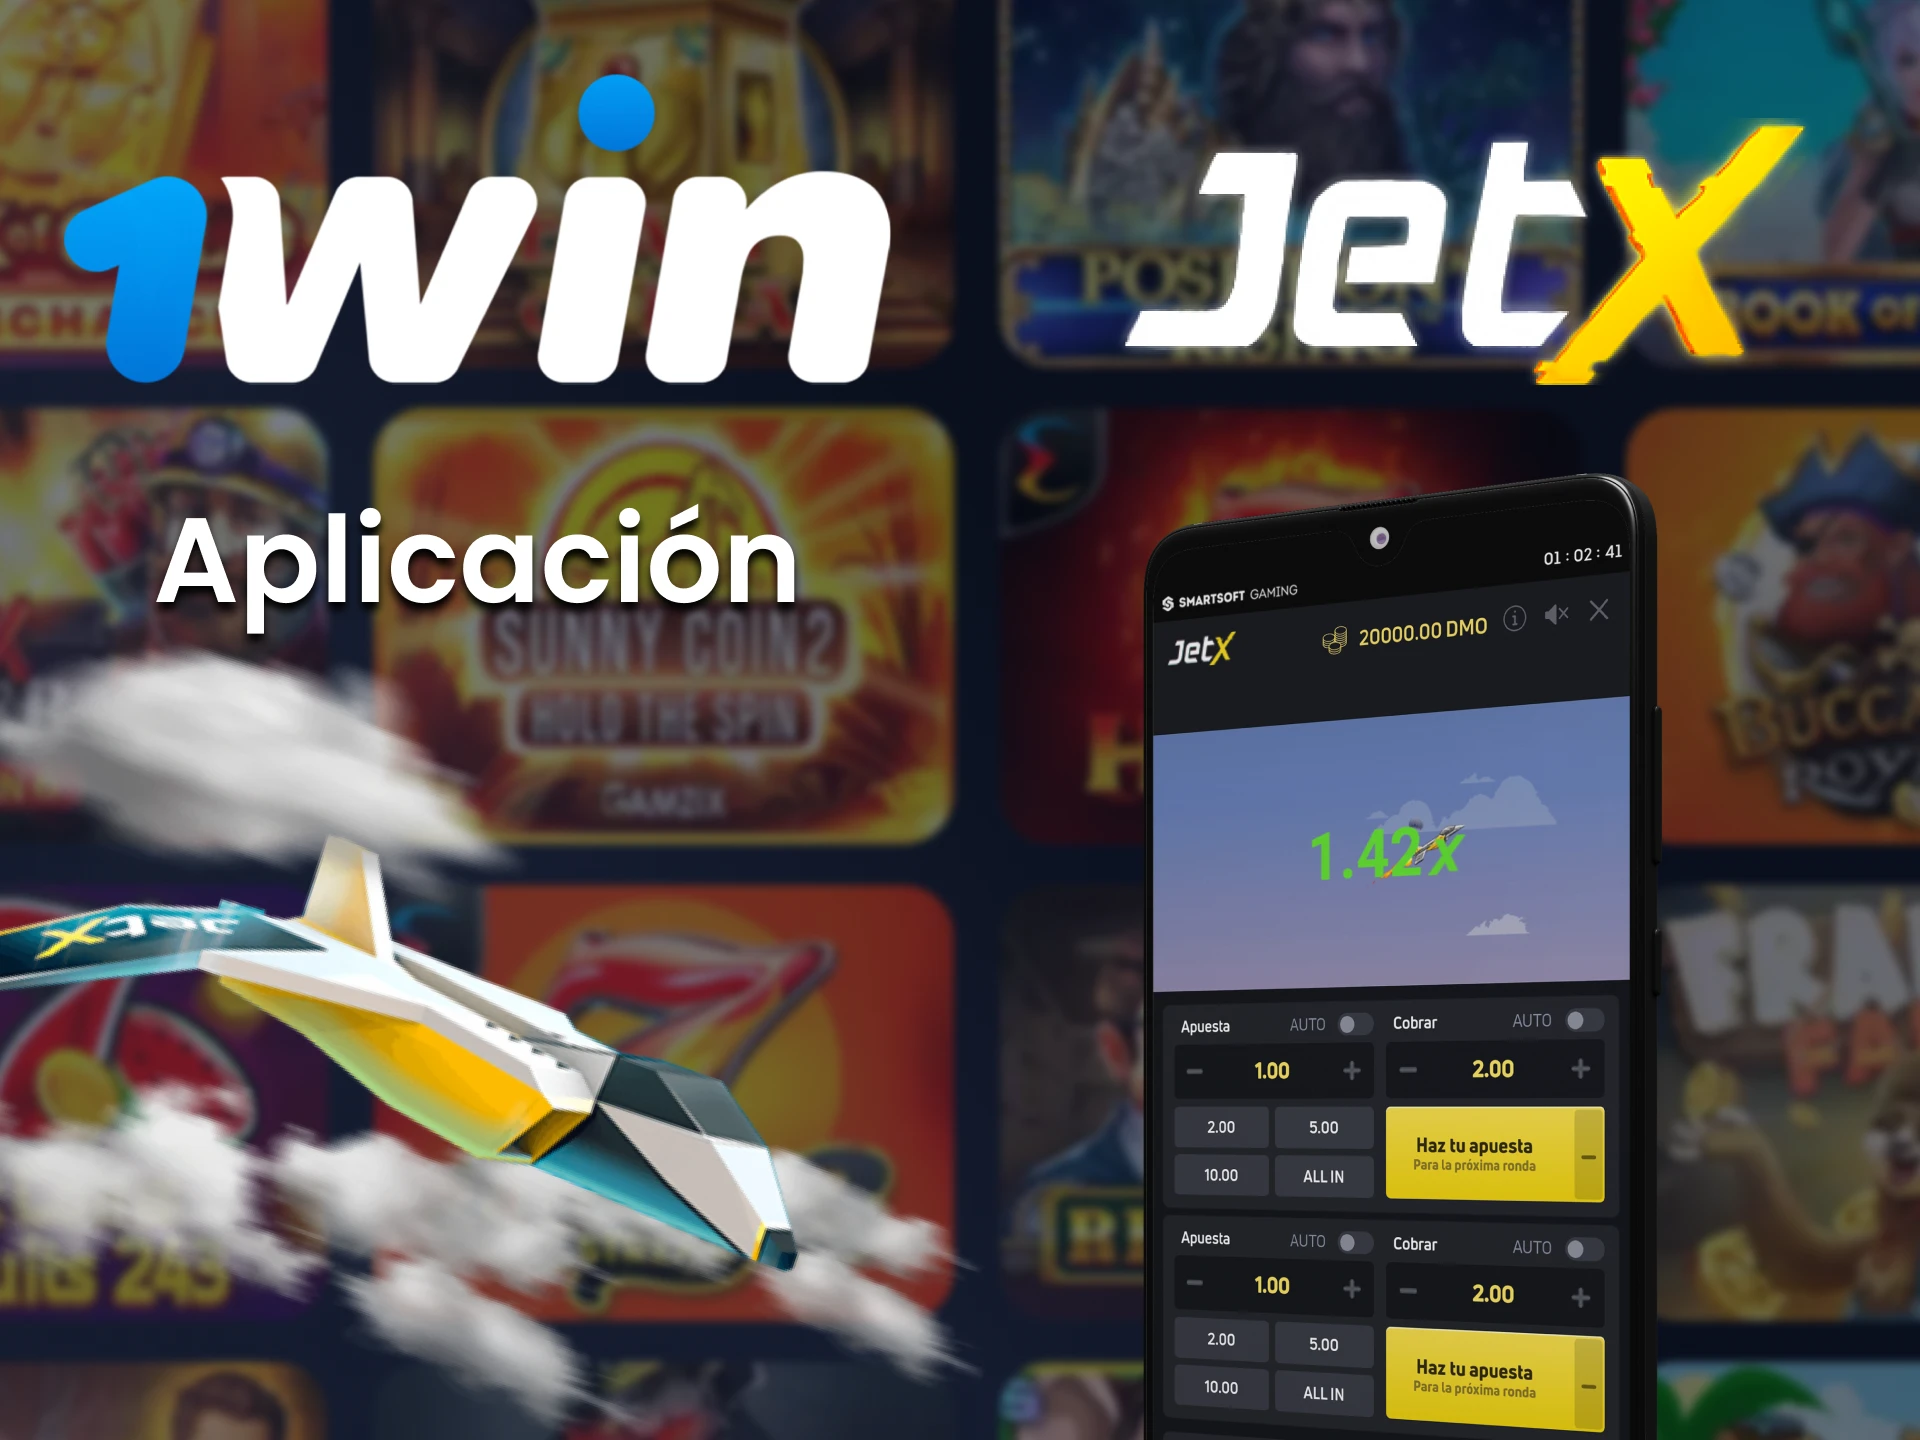 Descarga la aplicación 1win para jugar a Jetx.